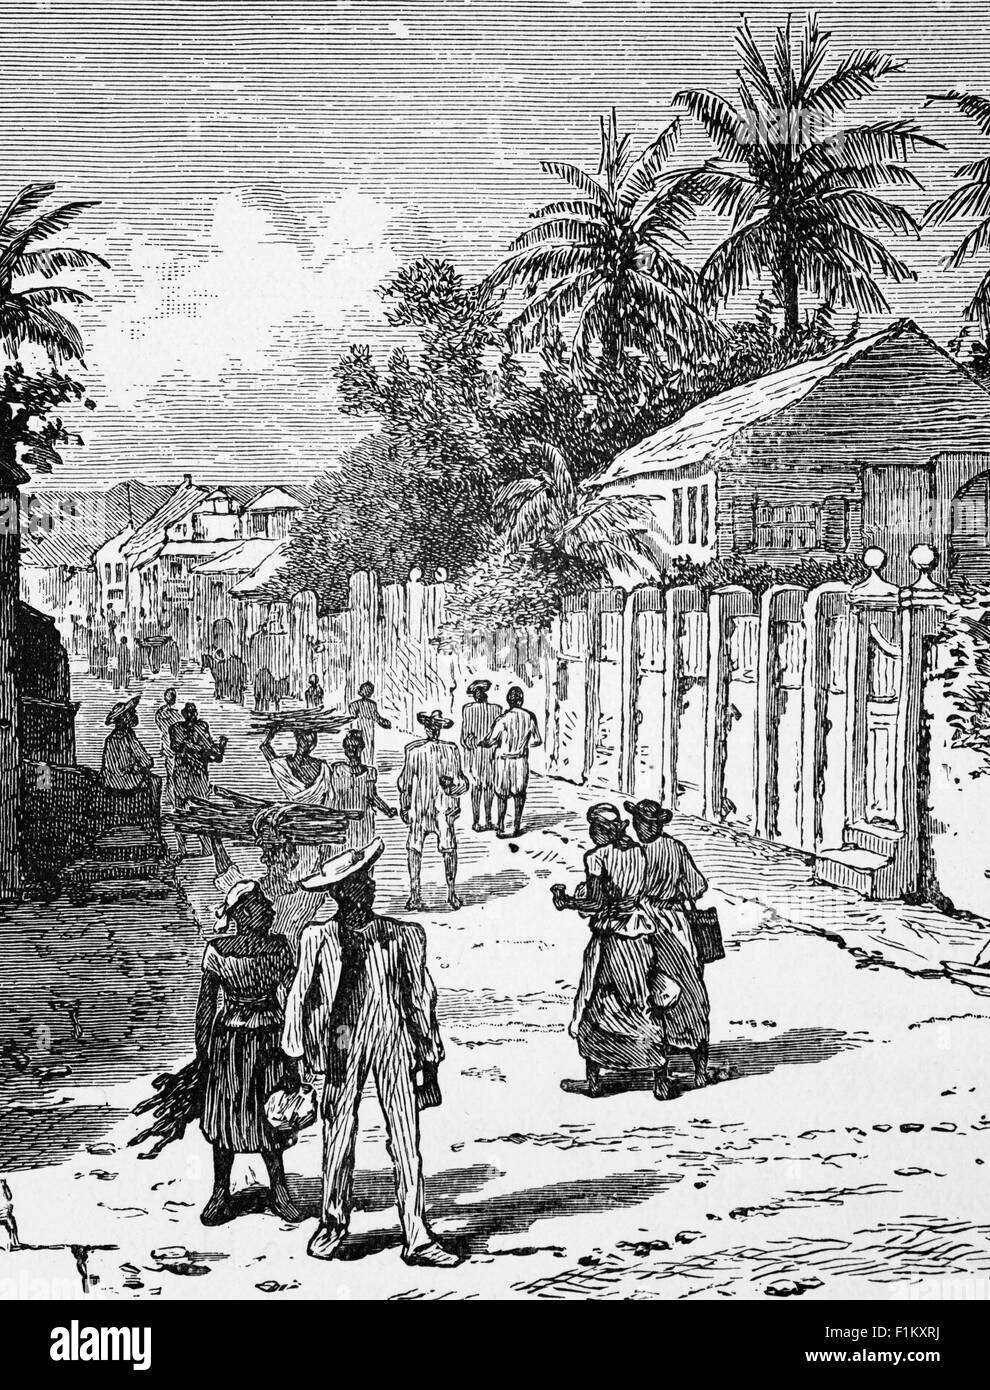 Ein Blick aus dem 19. Jahrhundert auf Kingston, die Hauptstadt und größte Stadt Jamaikas, an der südöstlichen Küste der Insel. 1848 erweiterte die jamaikanische Regierung Kingston durch den Bau neuer Häuser im Westen, Norden und Osten der Stadt. Dieses Gehäuse wurde in Bezug auf Rasse und Klasse stark getrennt und bis 1860 lebte die Mehrheit der weißen Eliten am Stadtrand. Stockfoto